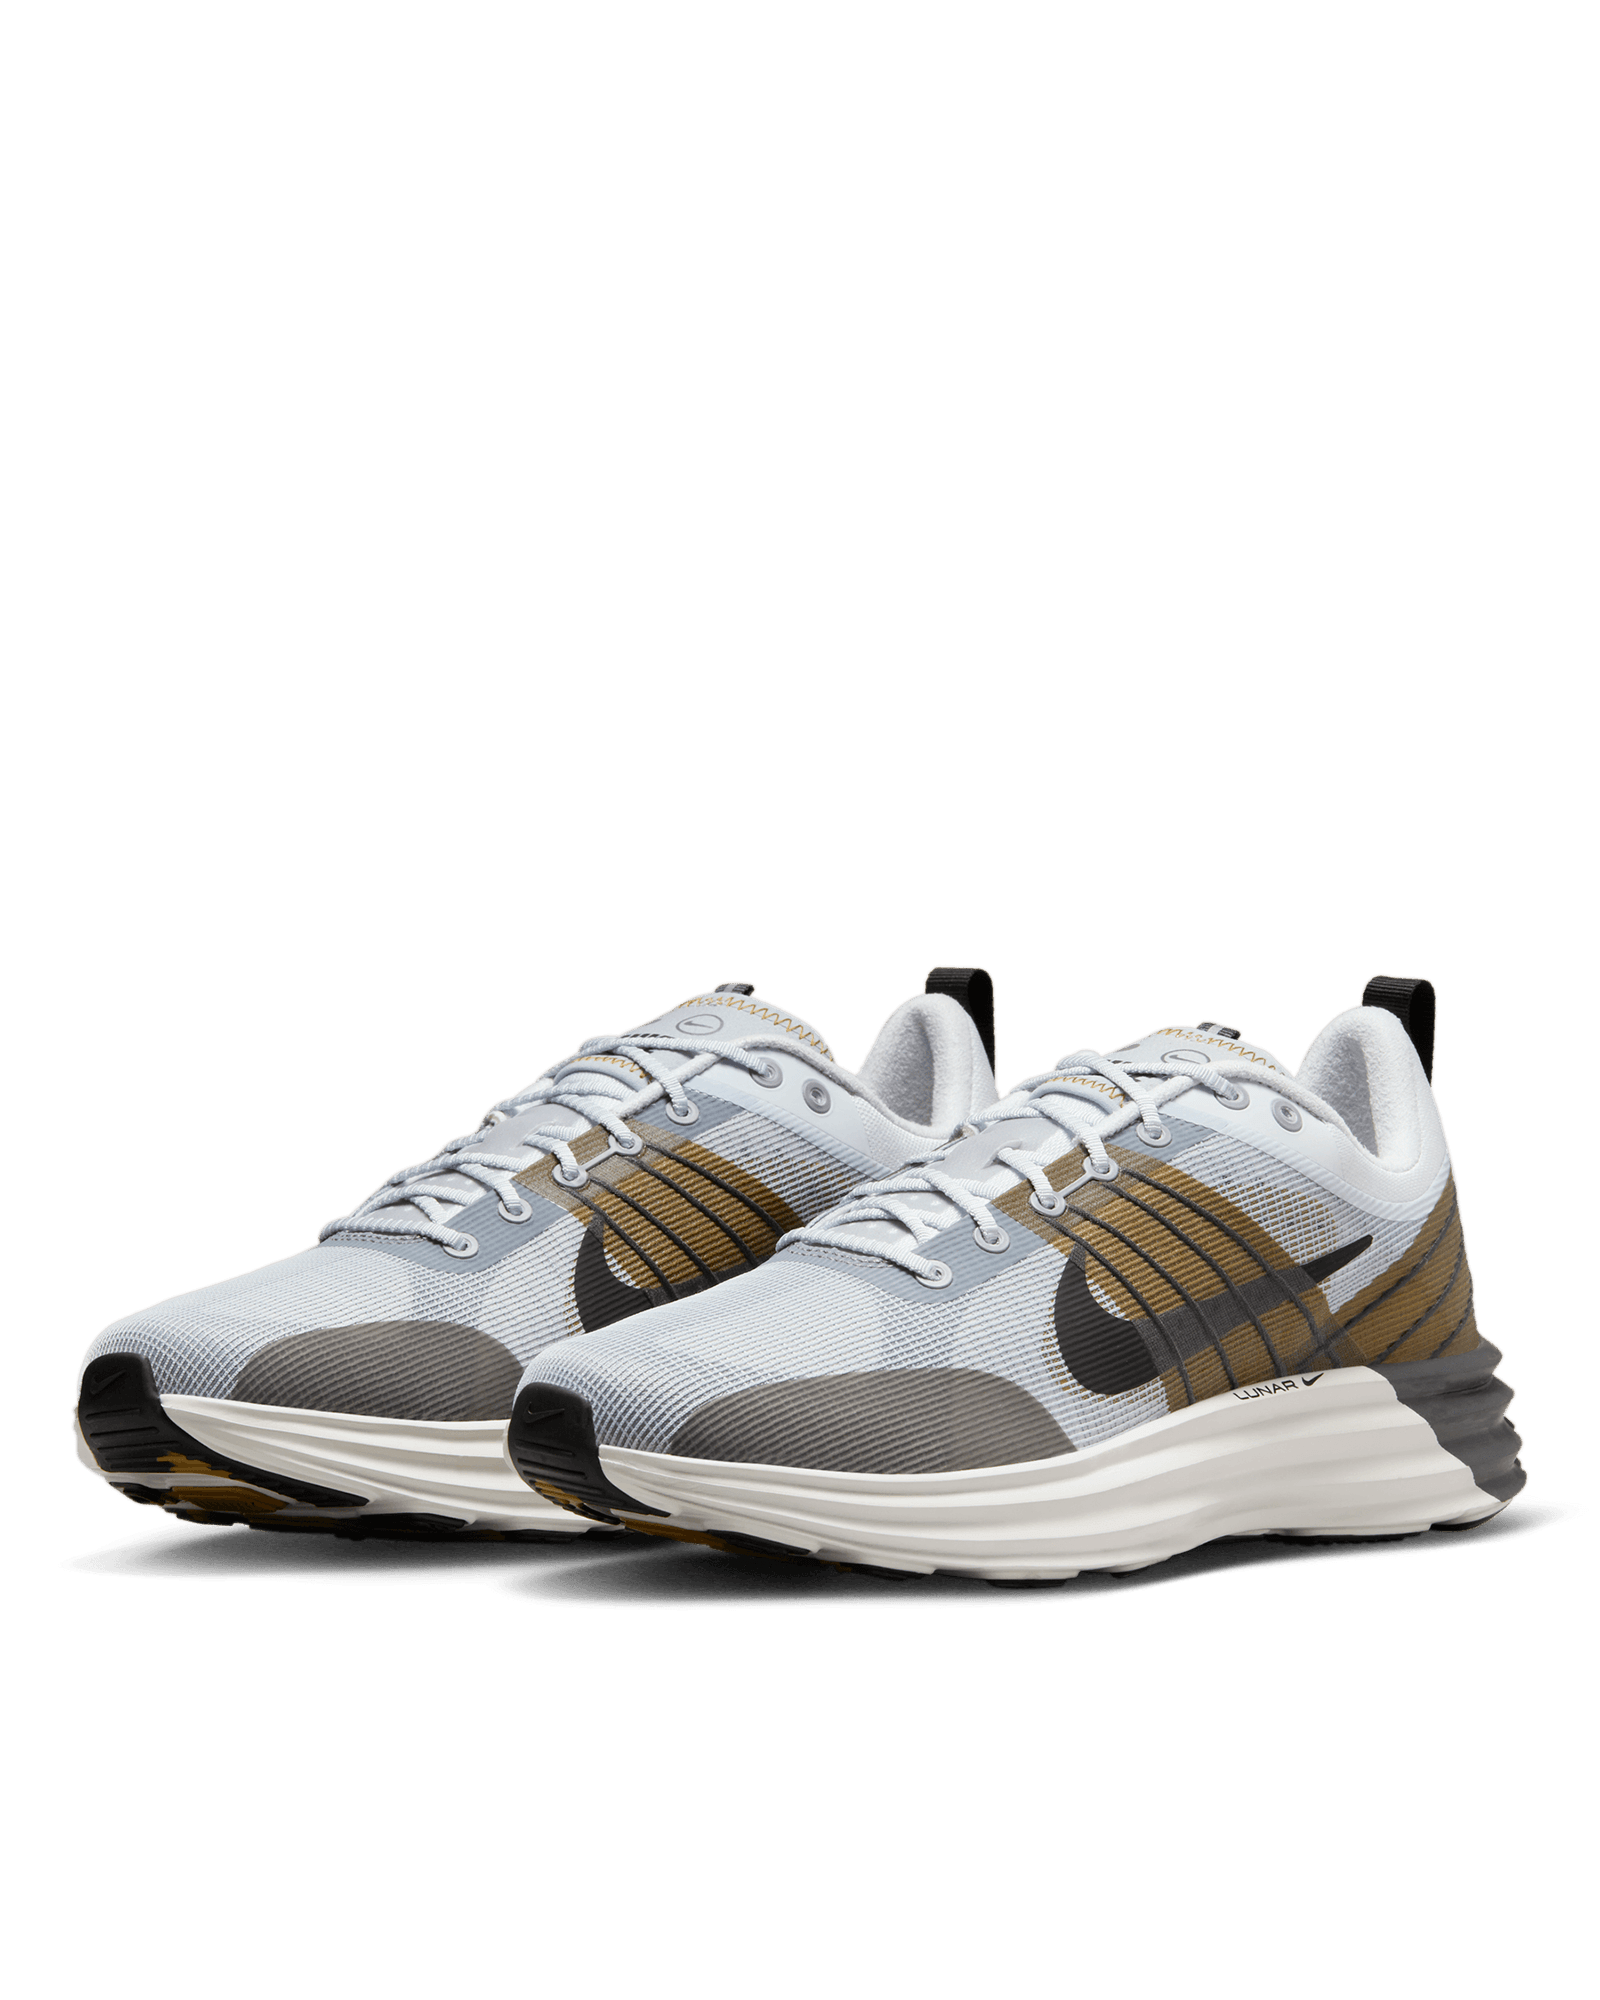 Lunar Roam $120 Nike Footwear Sneakers Grey